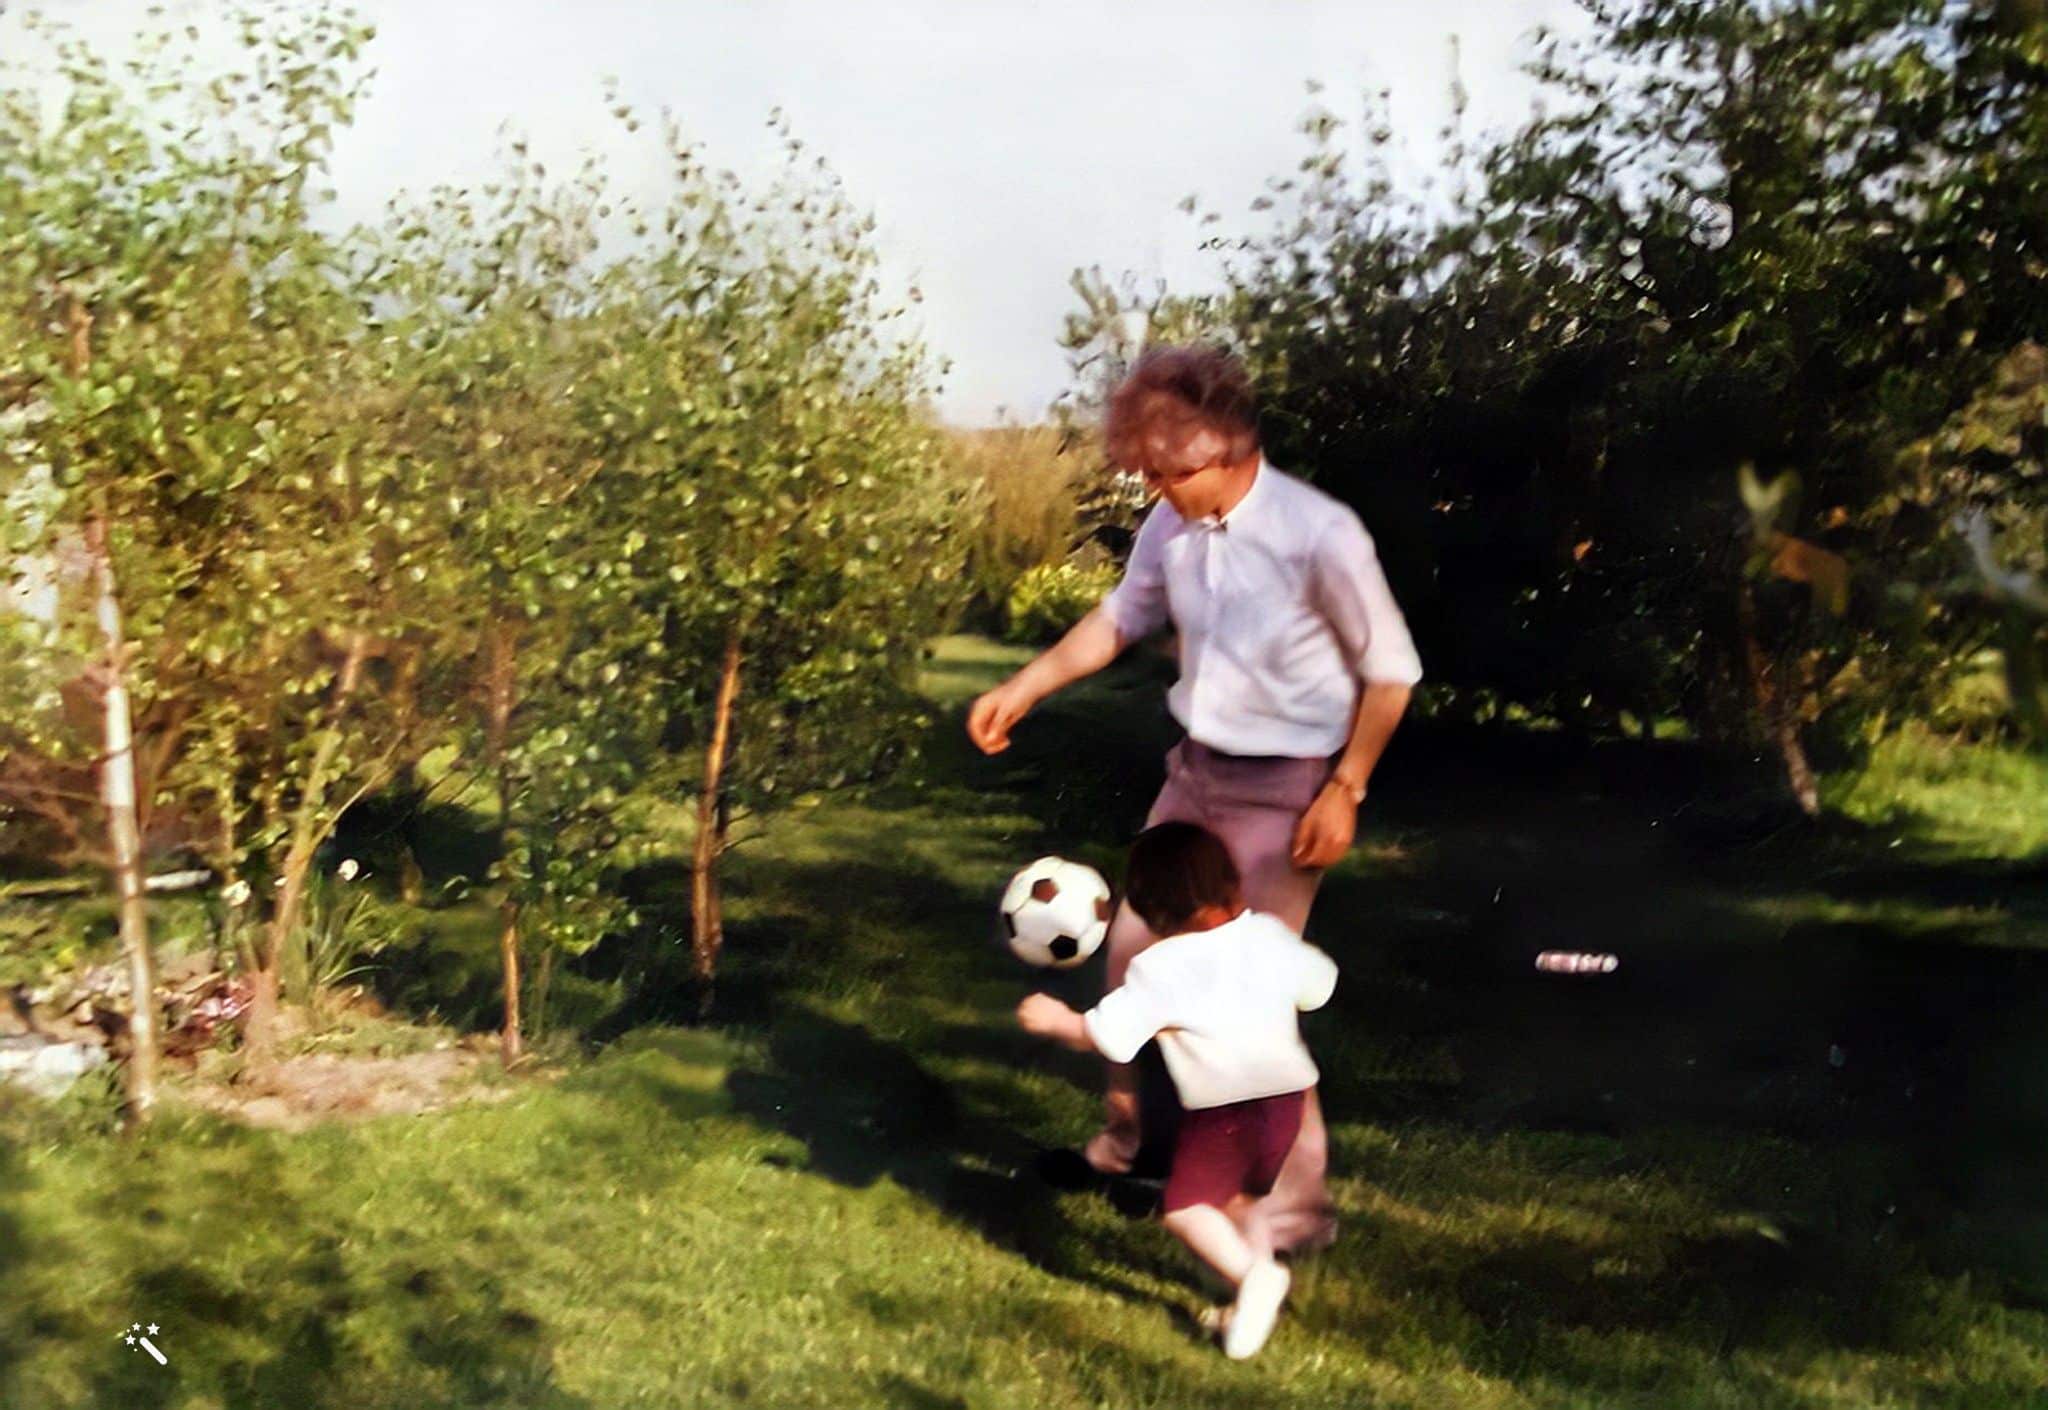 Ramón Sr. aan het voetballen. Foto verbeterd en ingekleurd met MyHeritage